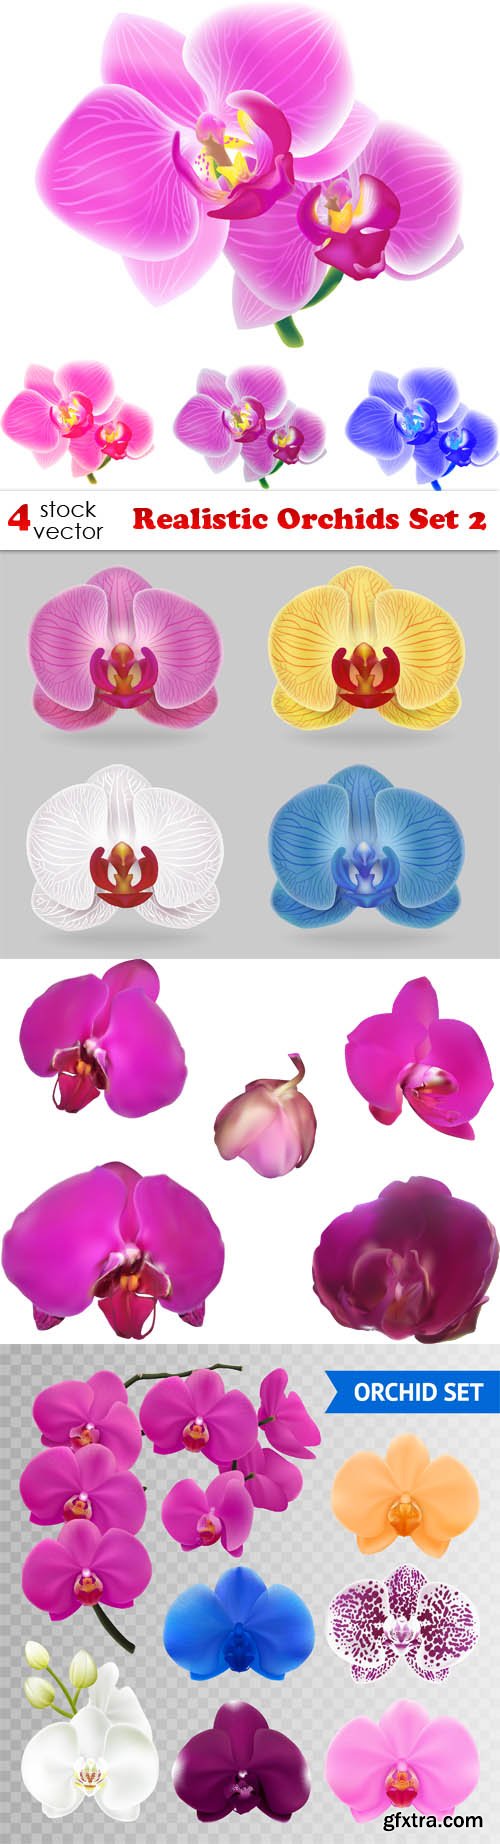 Vectors - Realistic Orchids Set 2